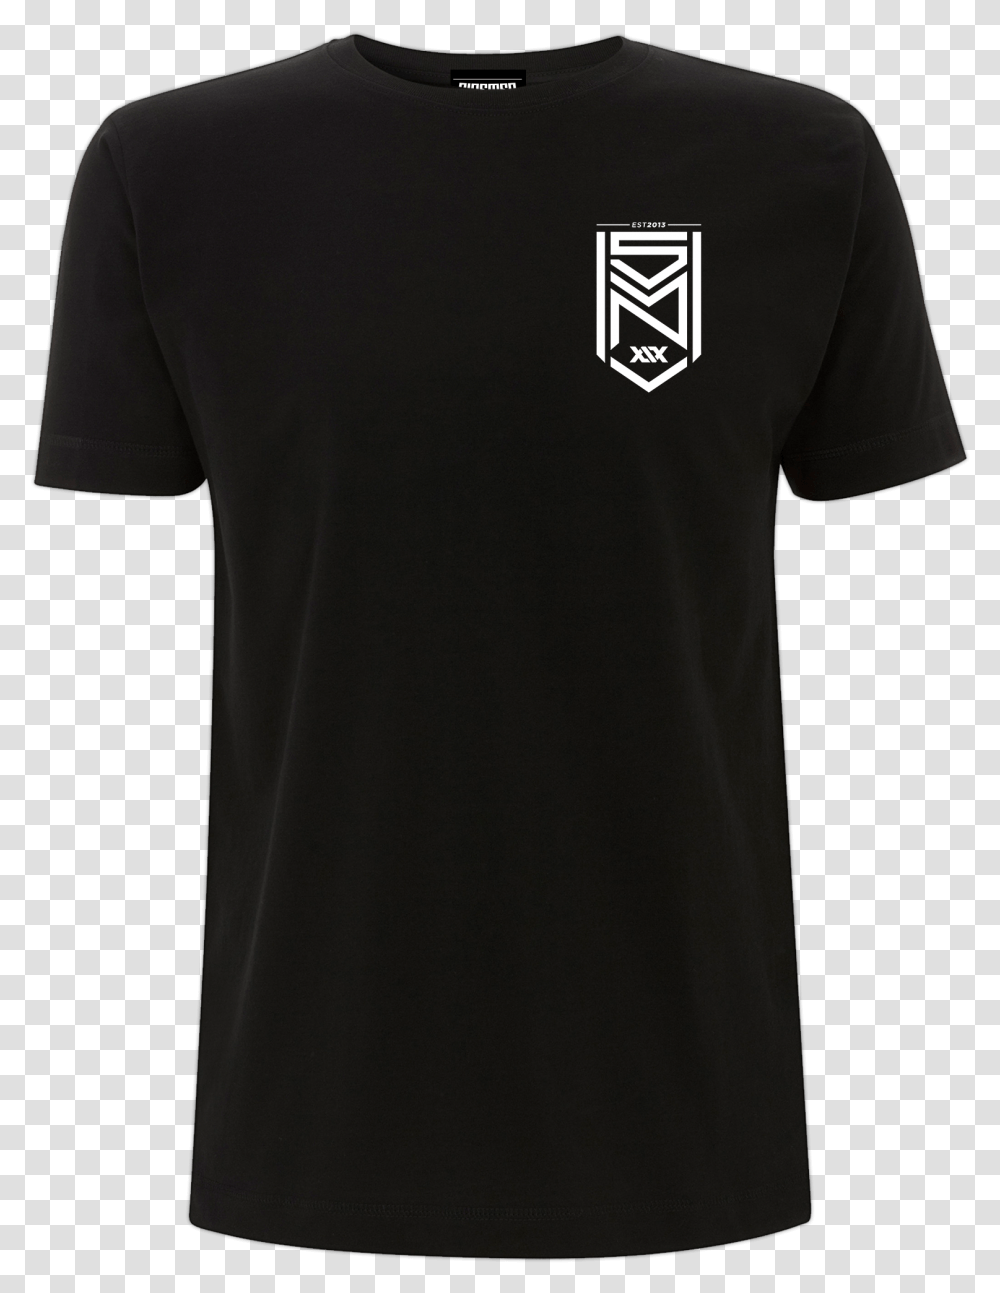 Sidemen T Shirt, Apparel, Sleeve, T-Shirt Transparent Png